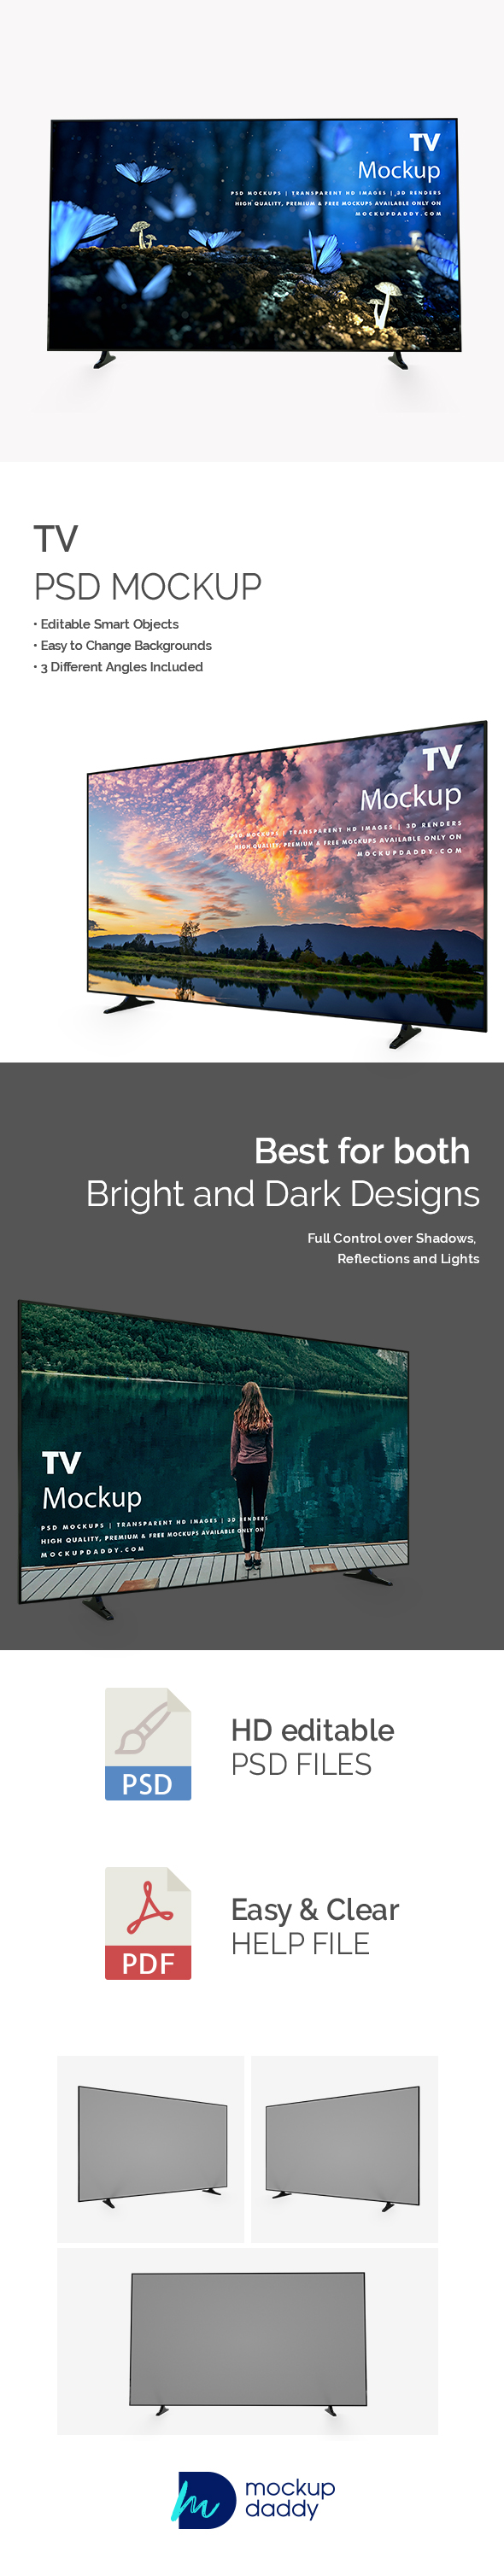 LED TV Mockup Featured